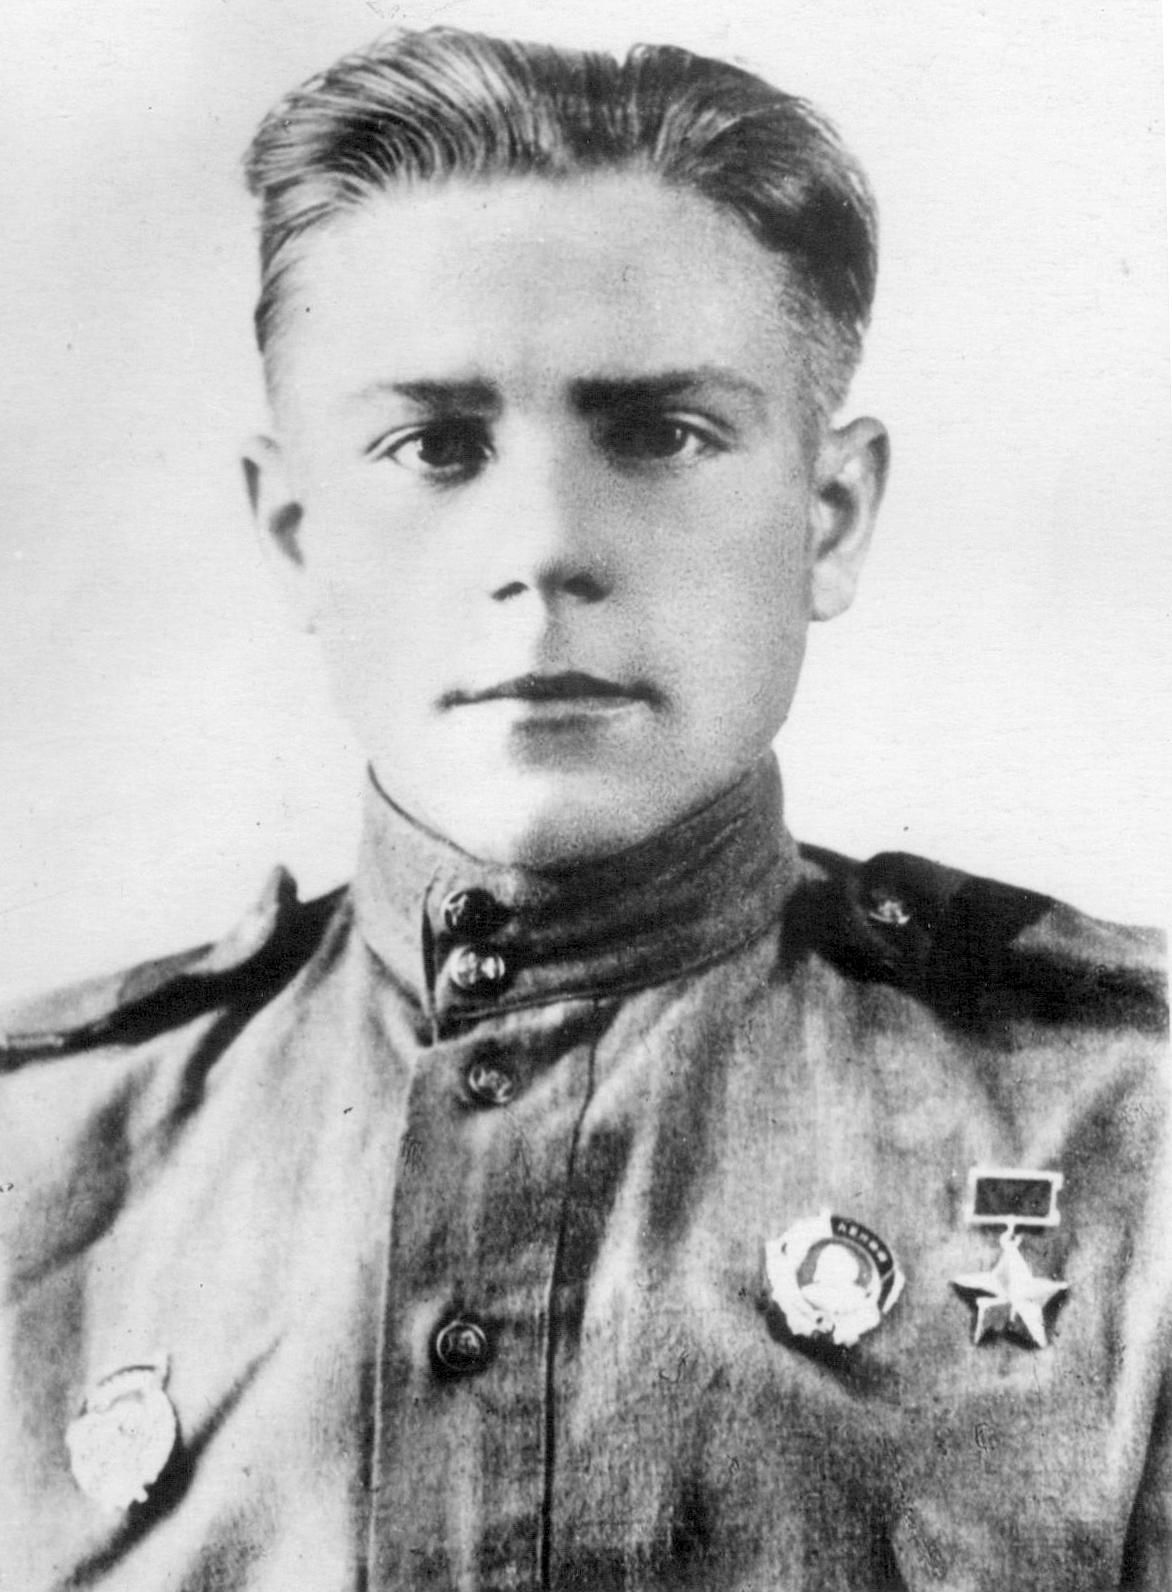 Герой Советского Союза гвардии младший сержант Дмитрий Остапенко, заместитель командира отделения противотанковых ружей. Родился 24 декабря 1924 года, украинец (фото 1943 г.).